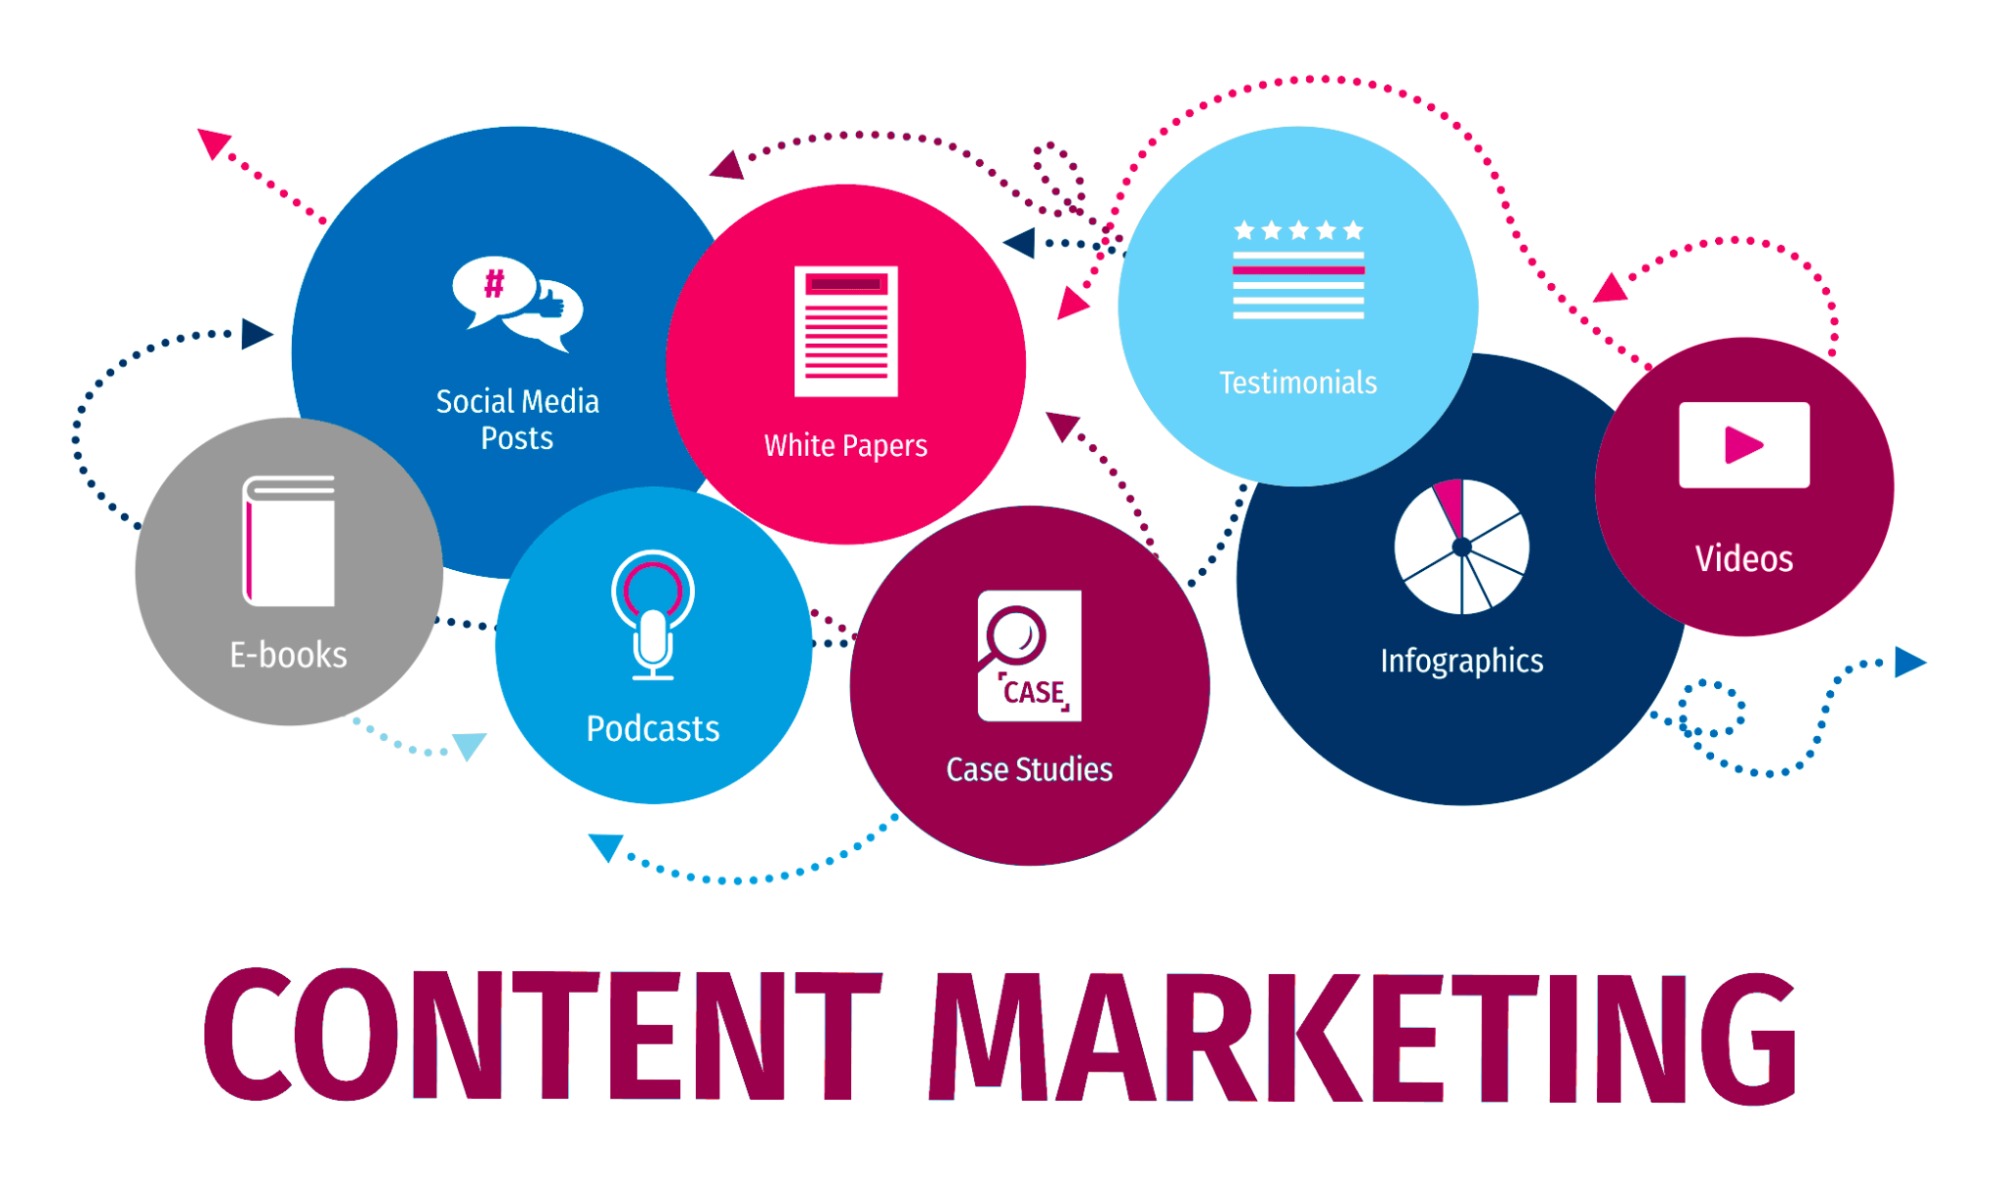 Chiến lược Content Marketing sử dụng hệ thống nội dung, thông điệp của sản phẩm để tiếp cận khách hàng